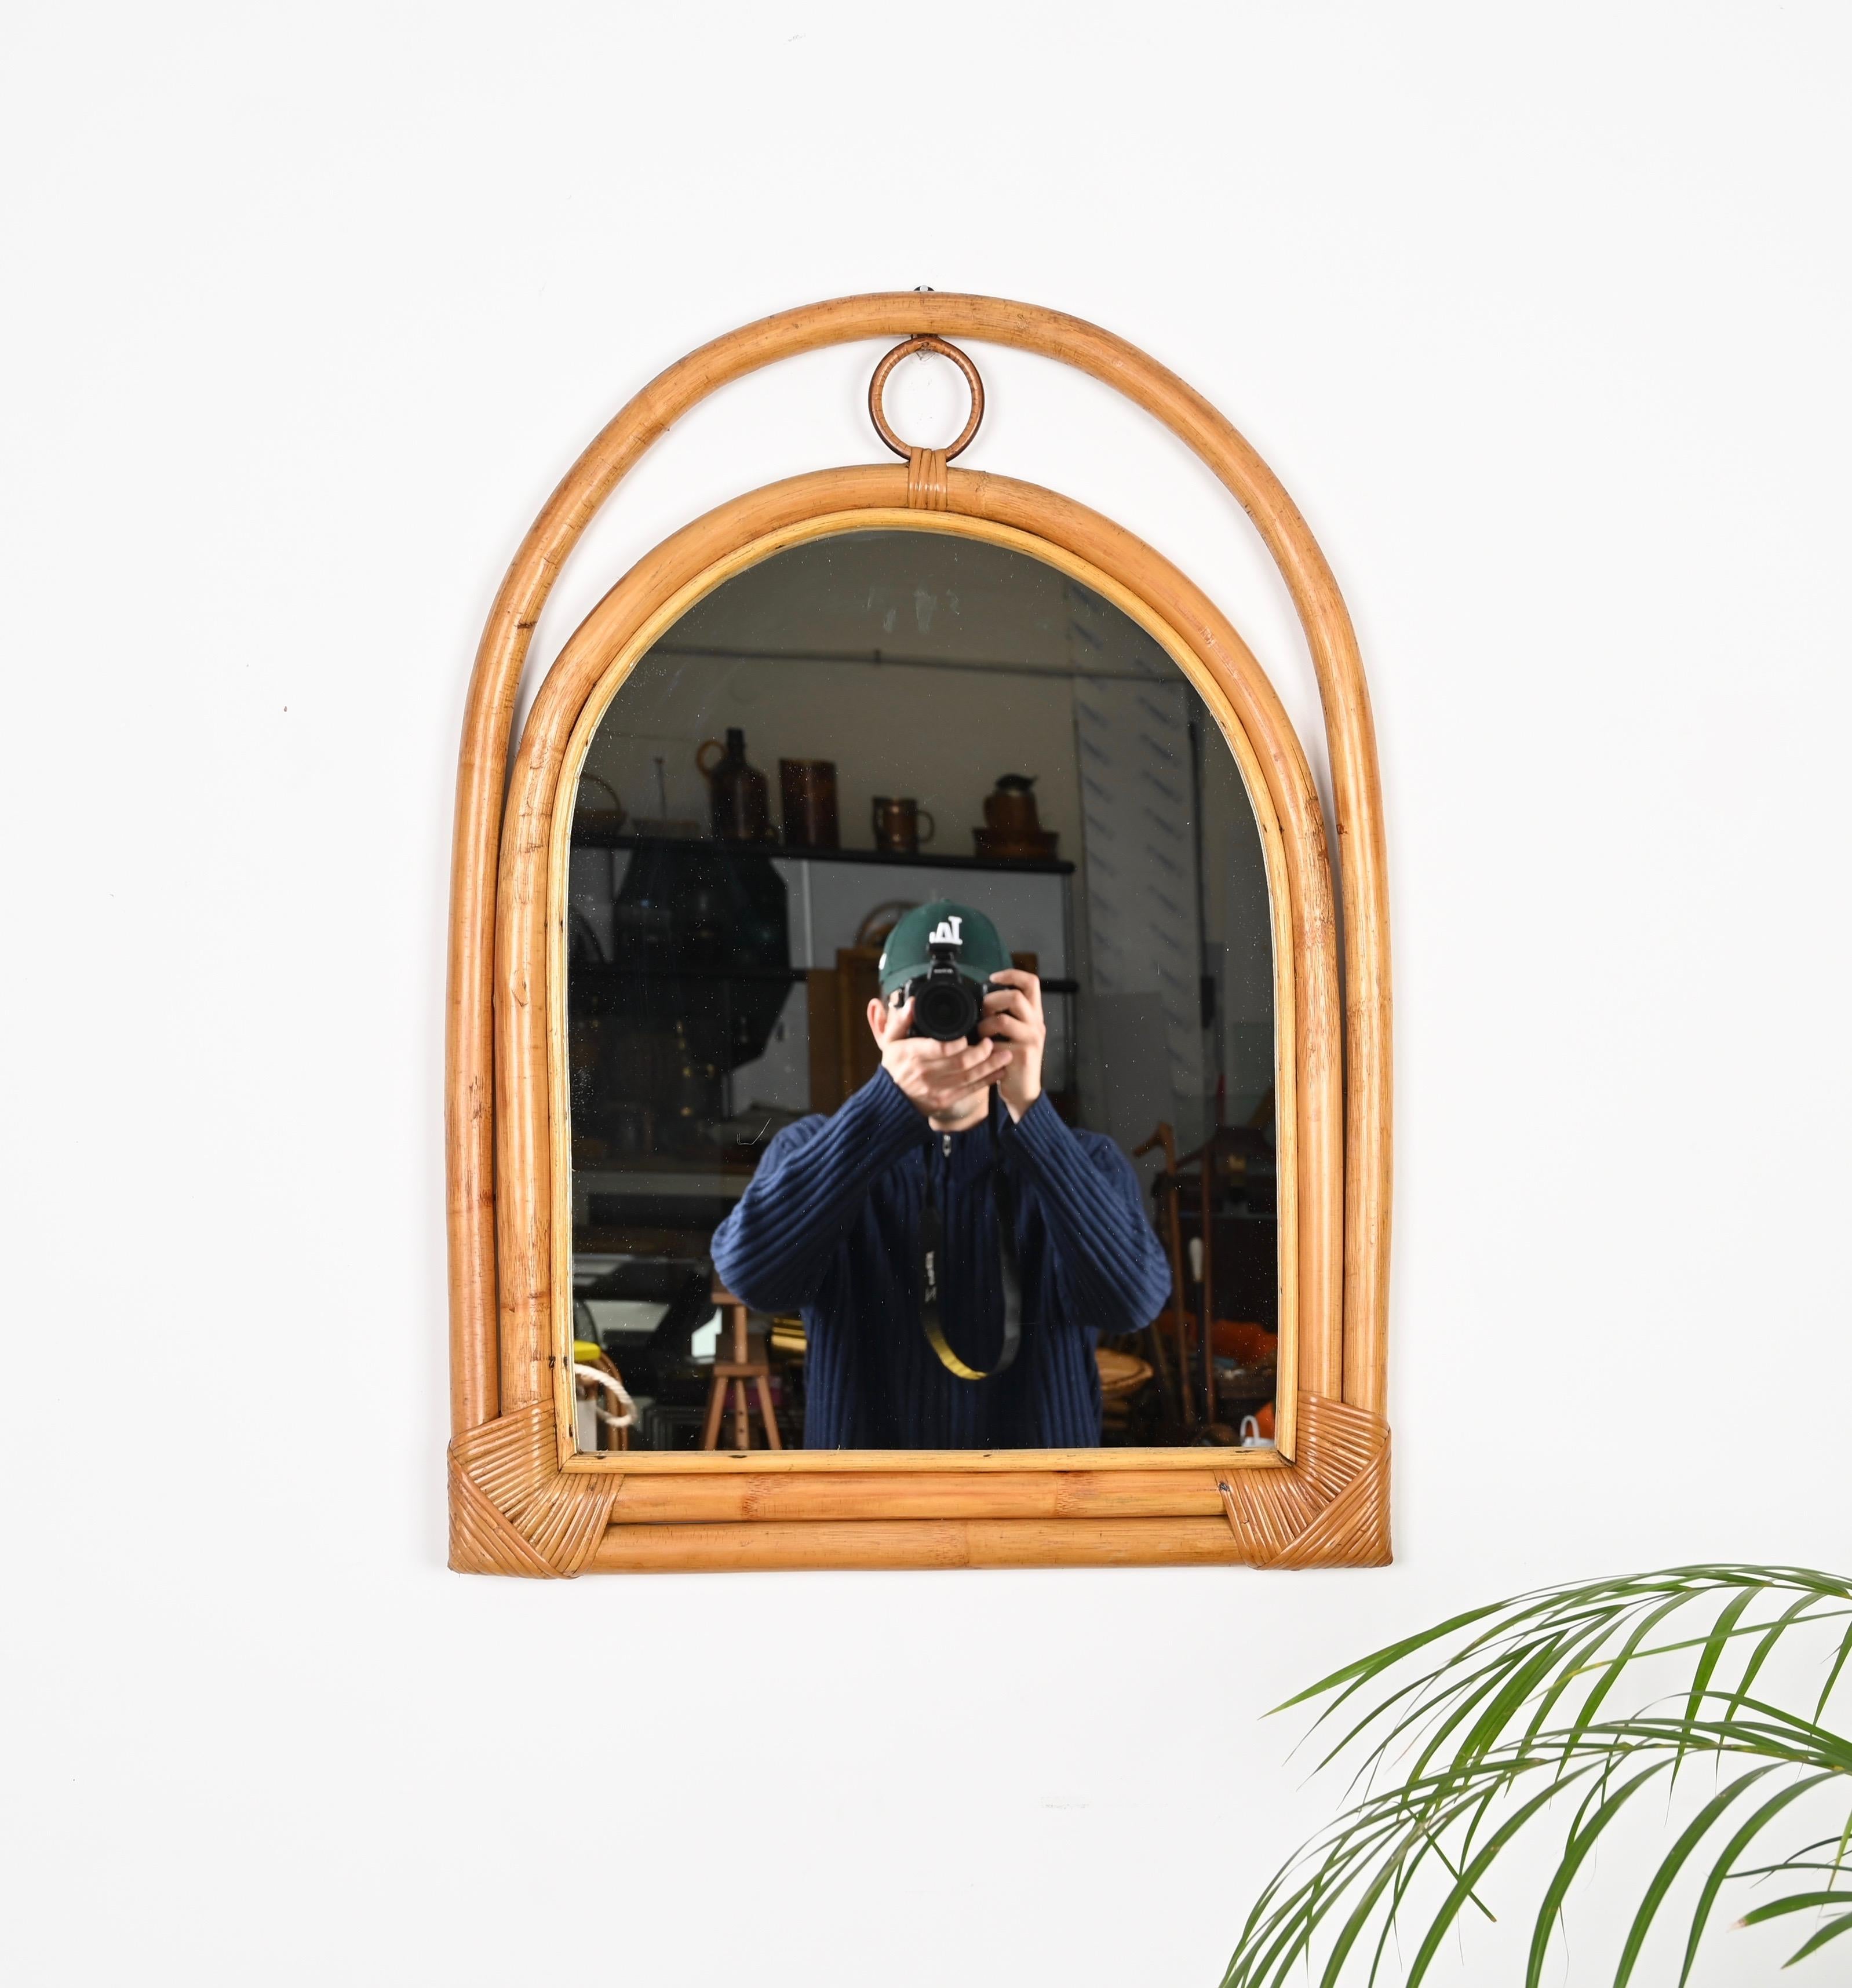 Charmant miroir en forme d'arche du milieu du siècle dernier, fabriqué en bambou, rotin et osier courbés. Ce charmant miroir de style Côte d'Azur a été fabriqué en Italie dans les années 1970. 

Ce miroir unique présente un double cadre en bambou